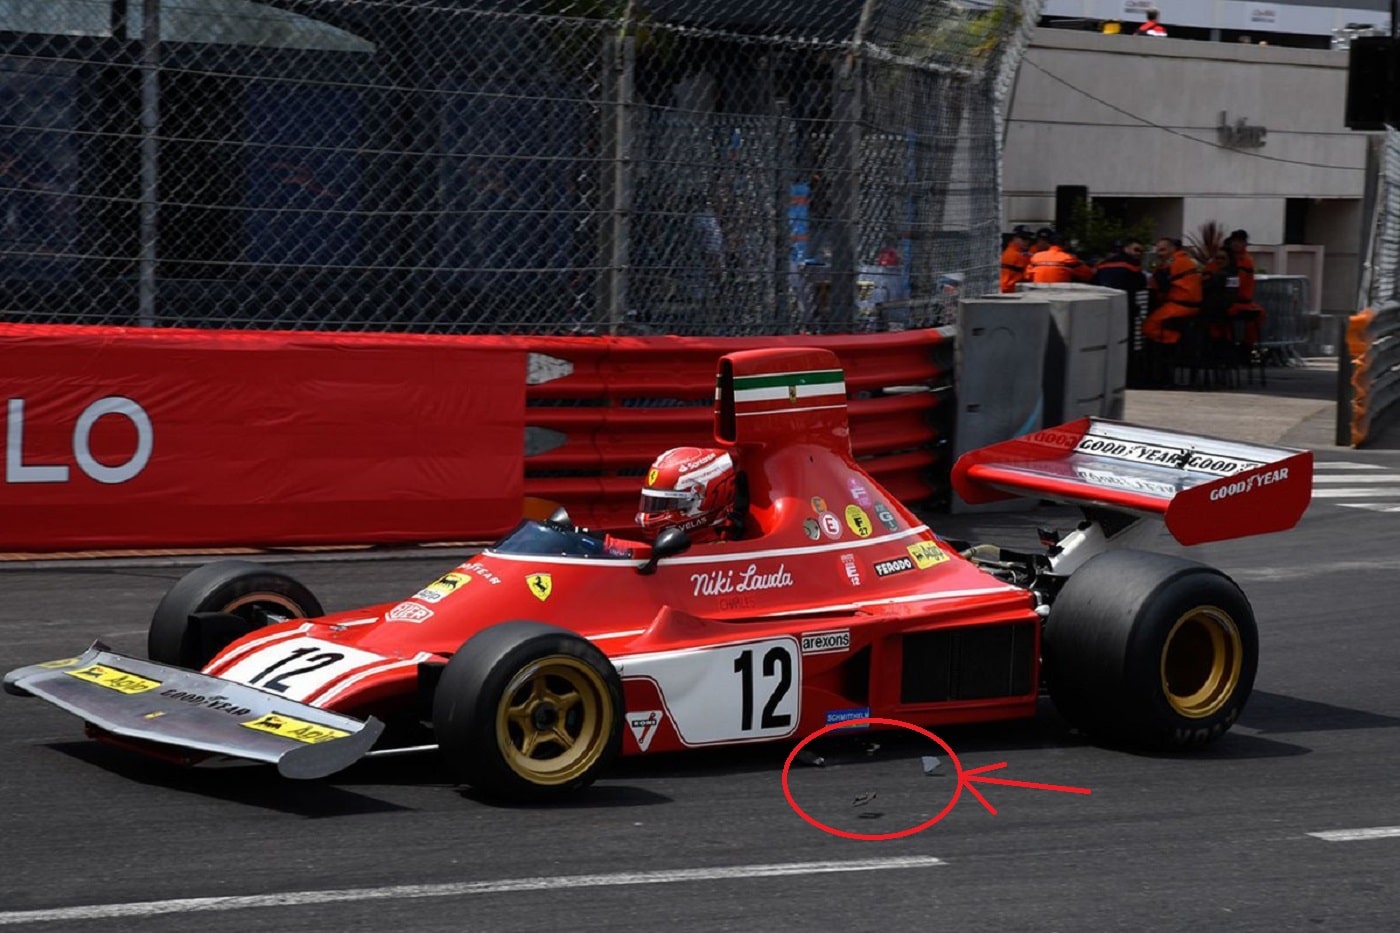 Incidente Leclerc a Monaco sulla 312B3 di Lauda: spunta una foto che mostra il disco rotto perso pochi attimi prima